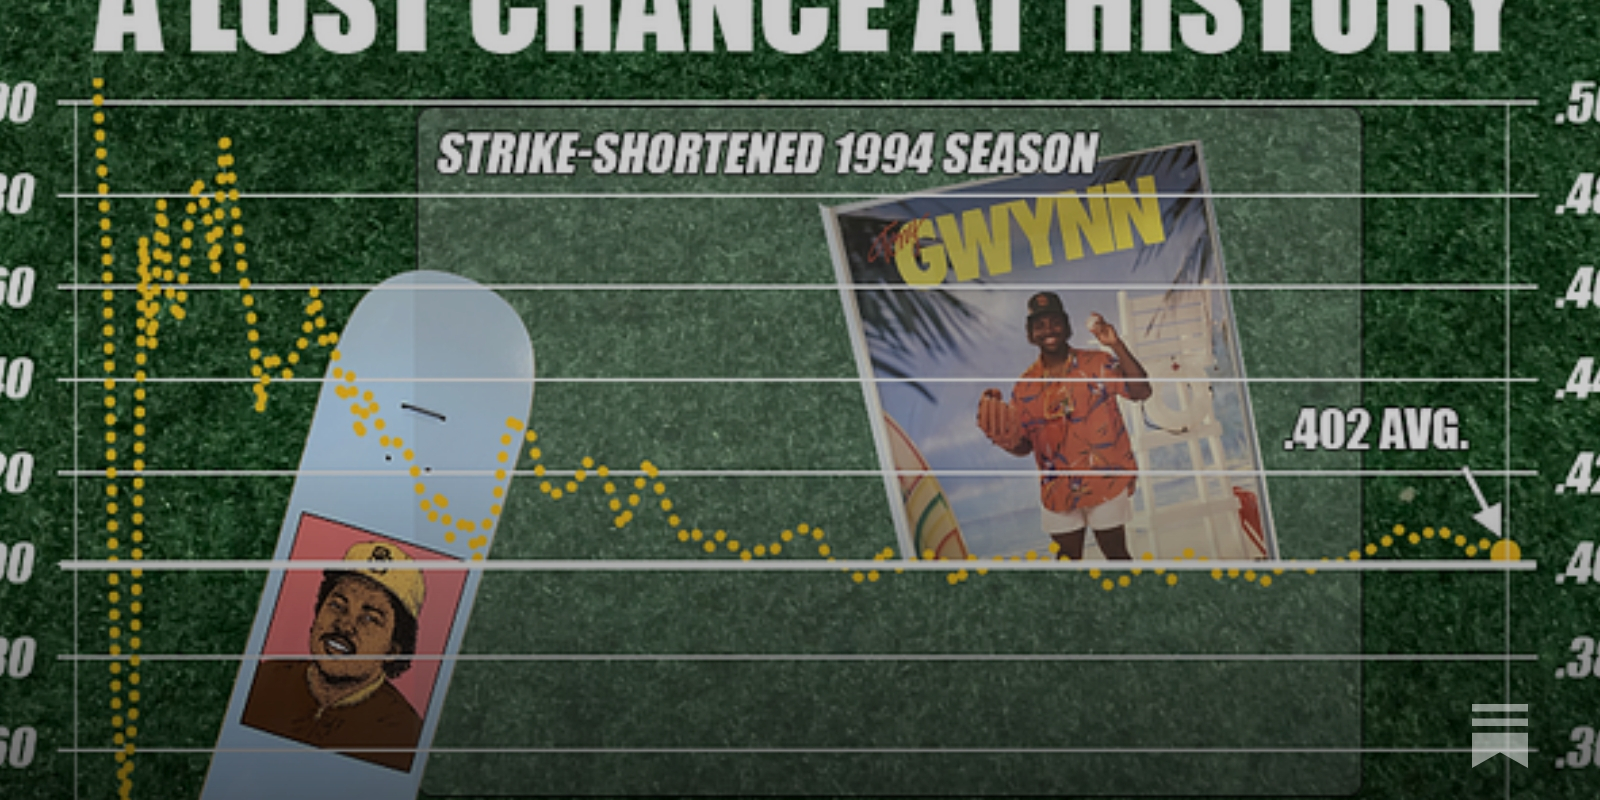 Tony Gwynn and a lost chance at baseball history